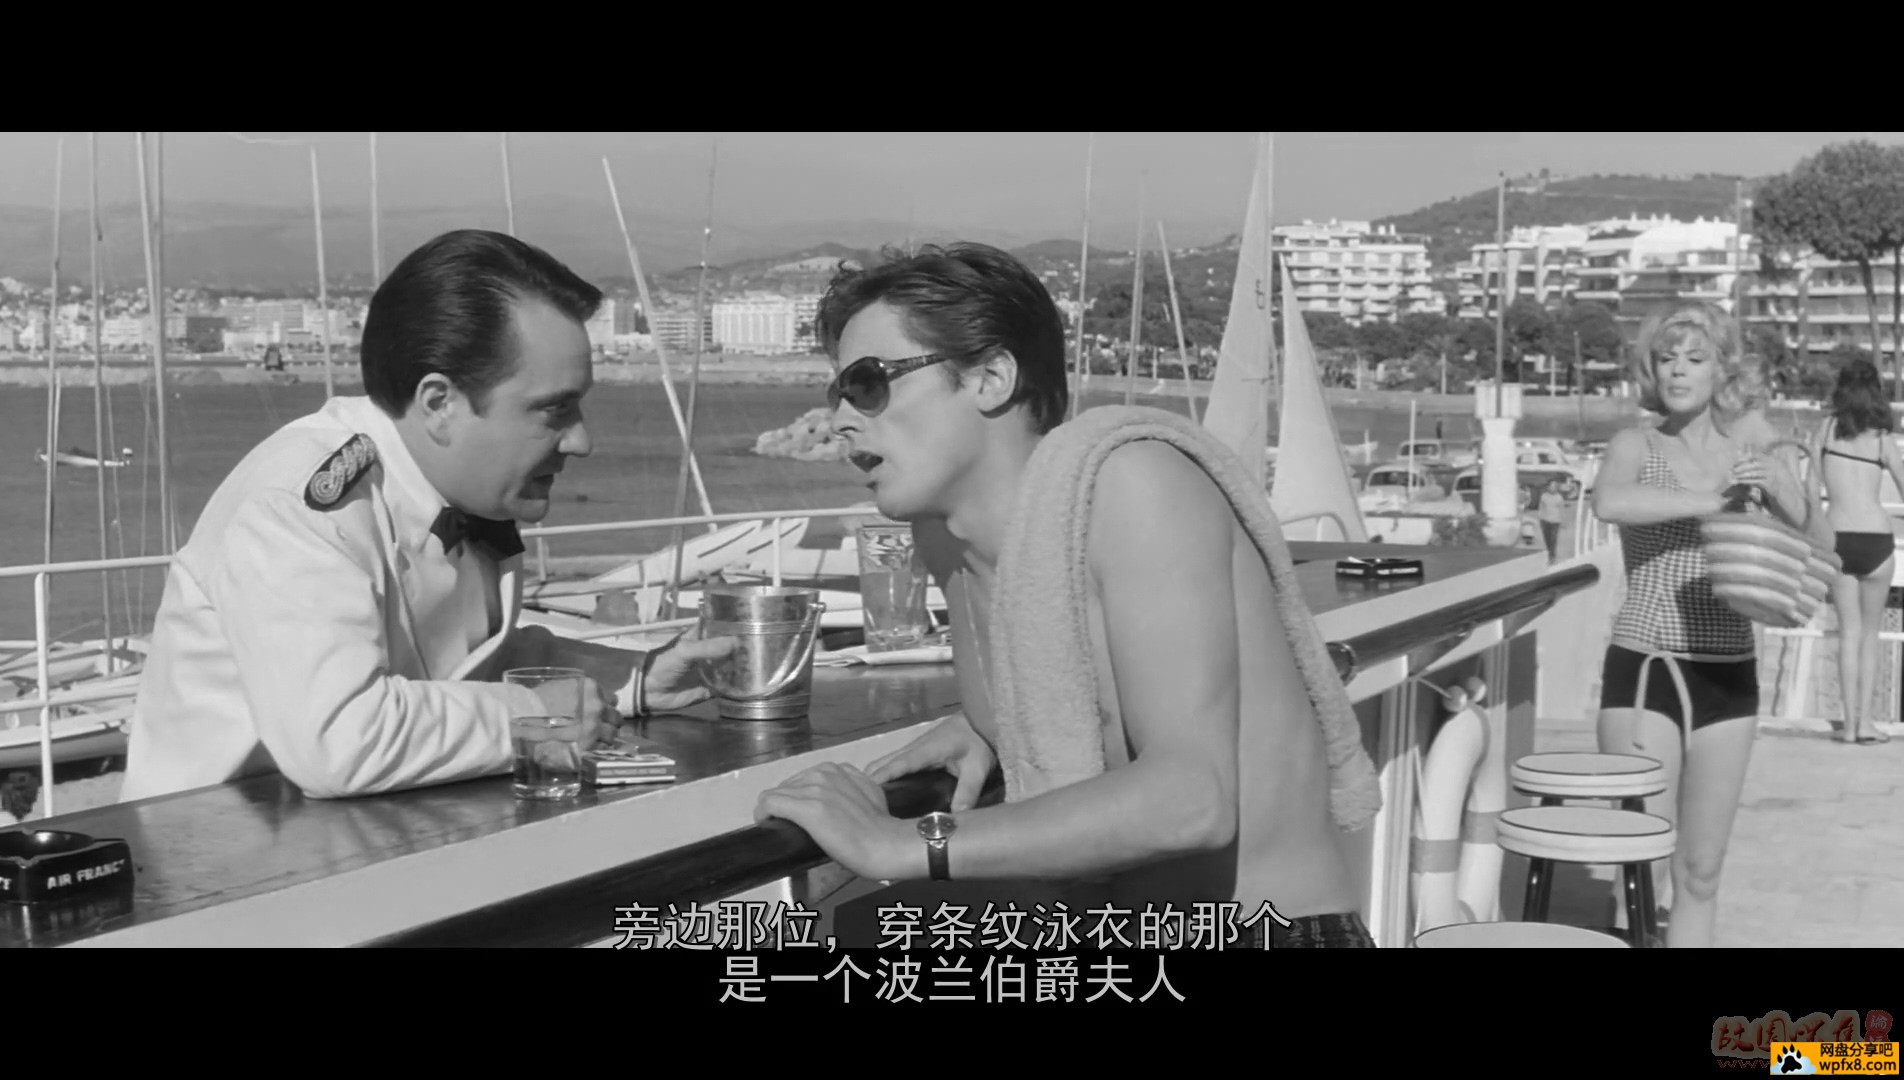 【大小通吃】XXXXXXXXXXXXXus-sol.1963.BluRay.1080p.x264.法语中字.mkv_20200419_143.jpg